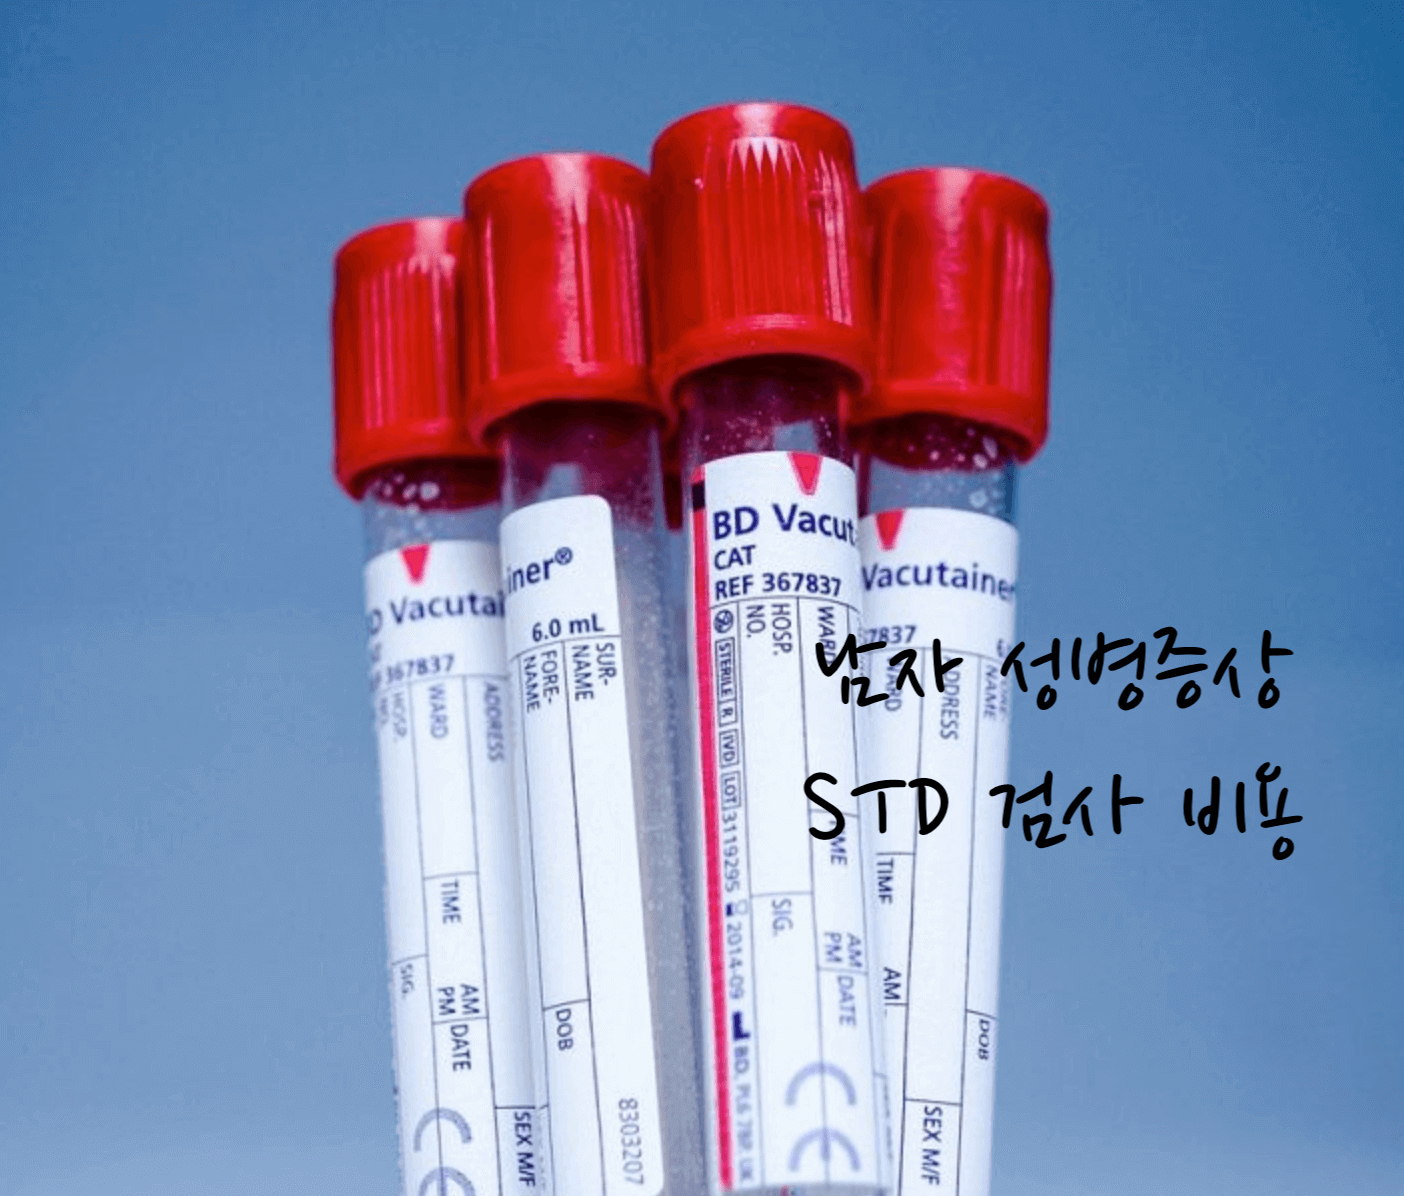 남자 성병증상 STD 검사 비용